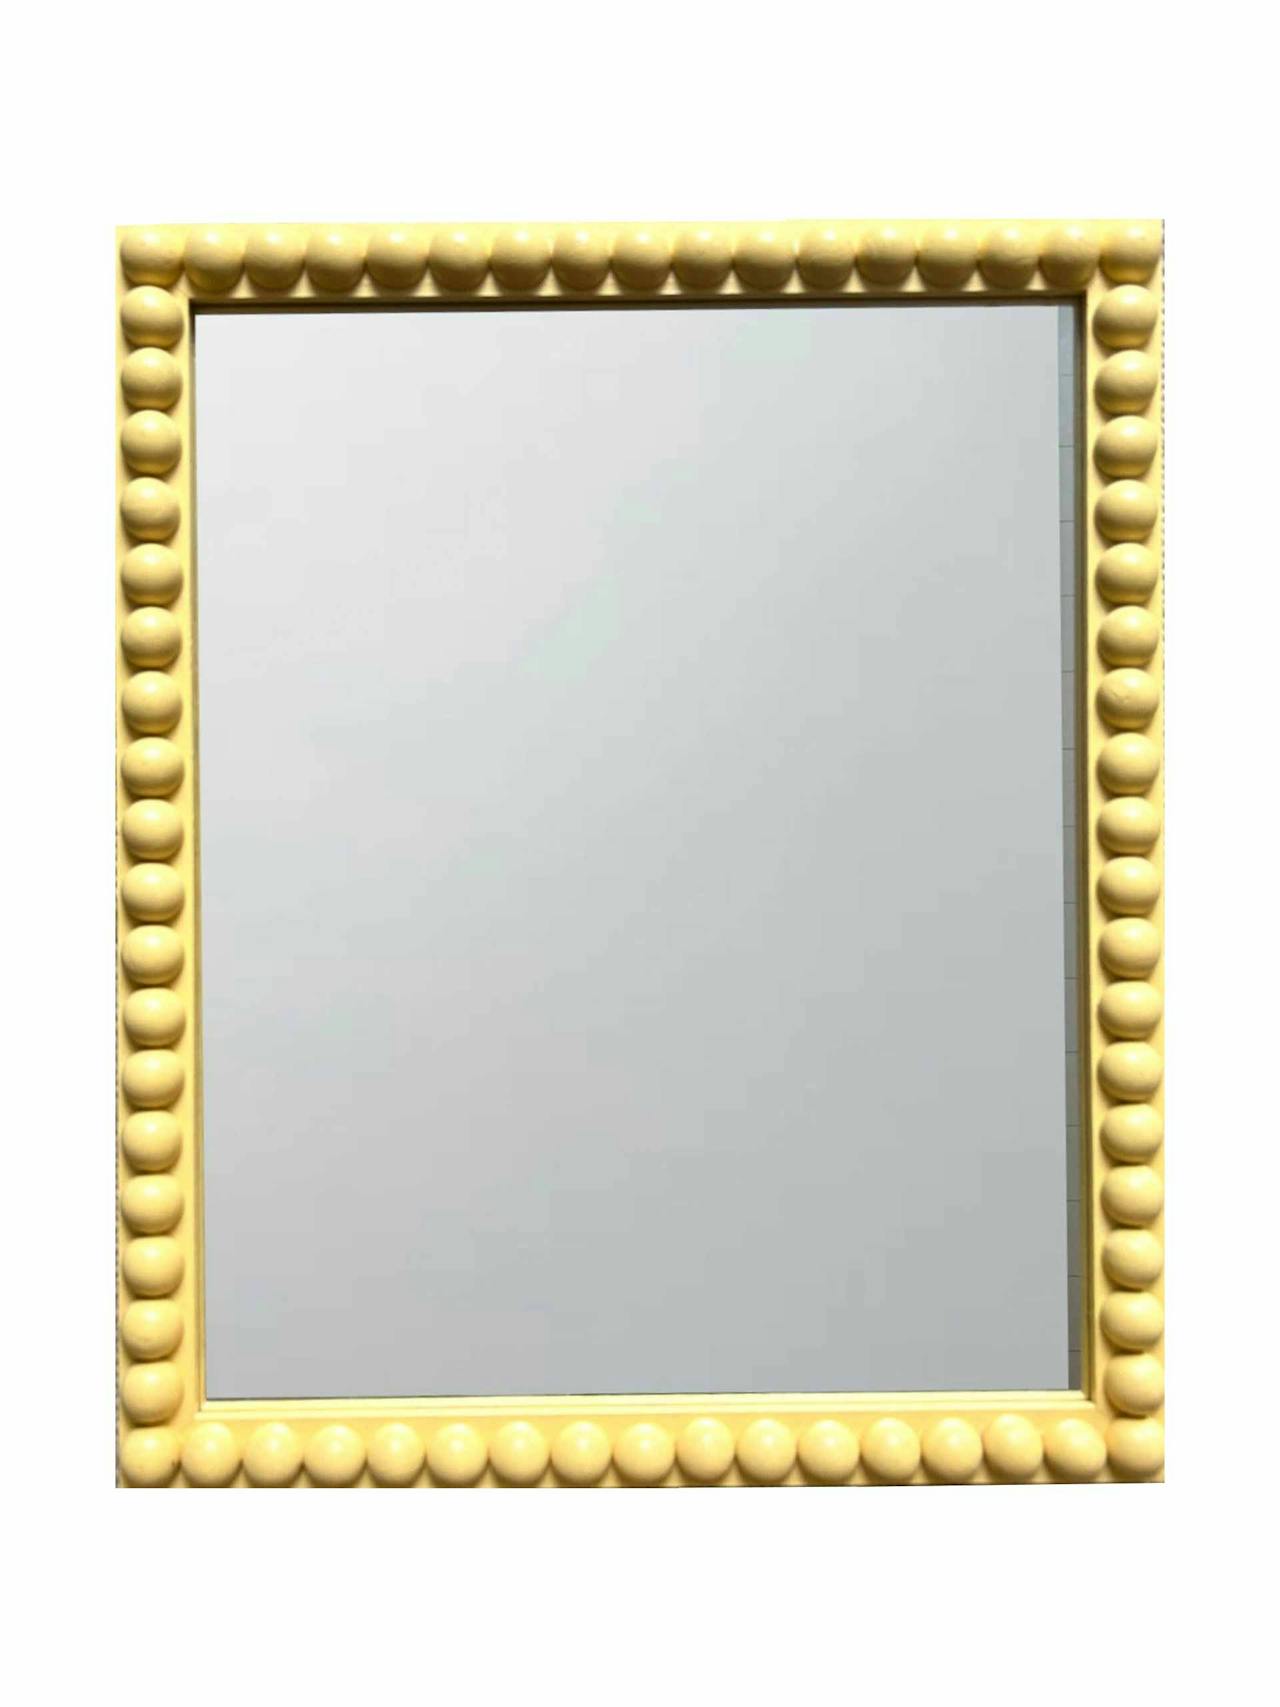 DM Bobbin mirror in yellow ground